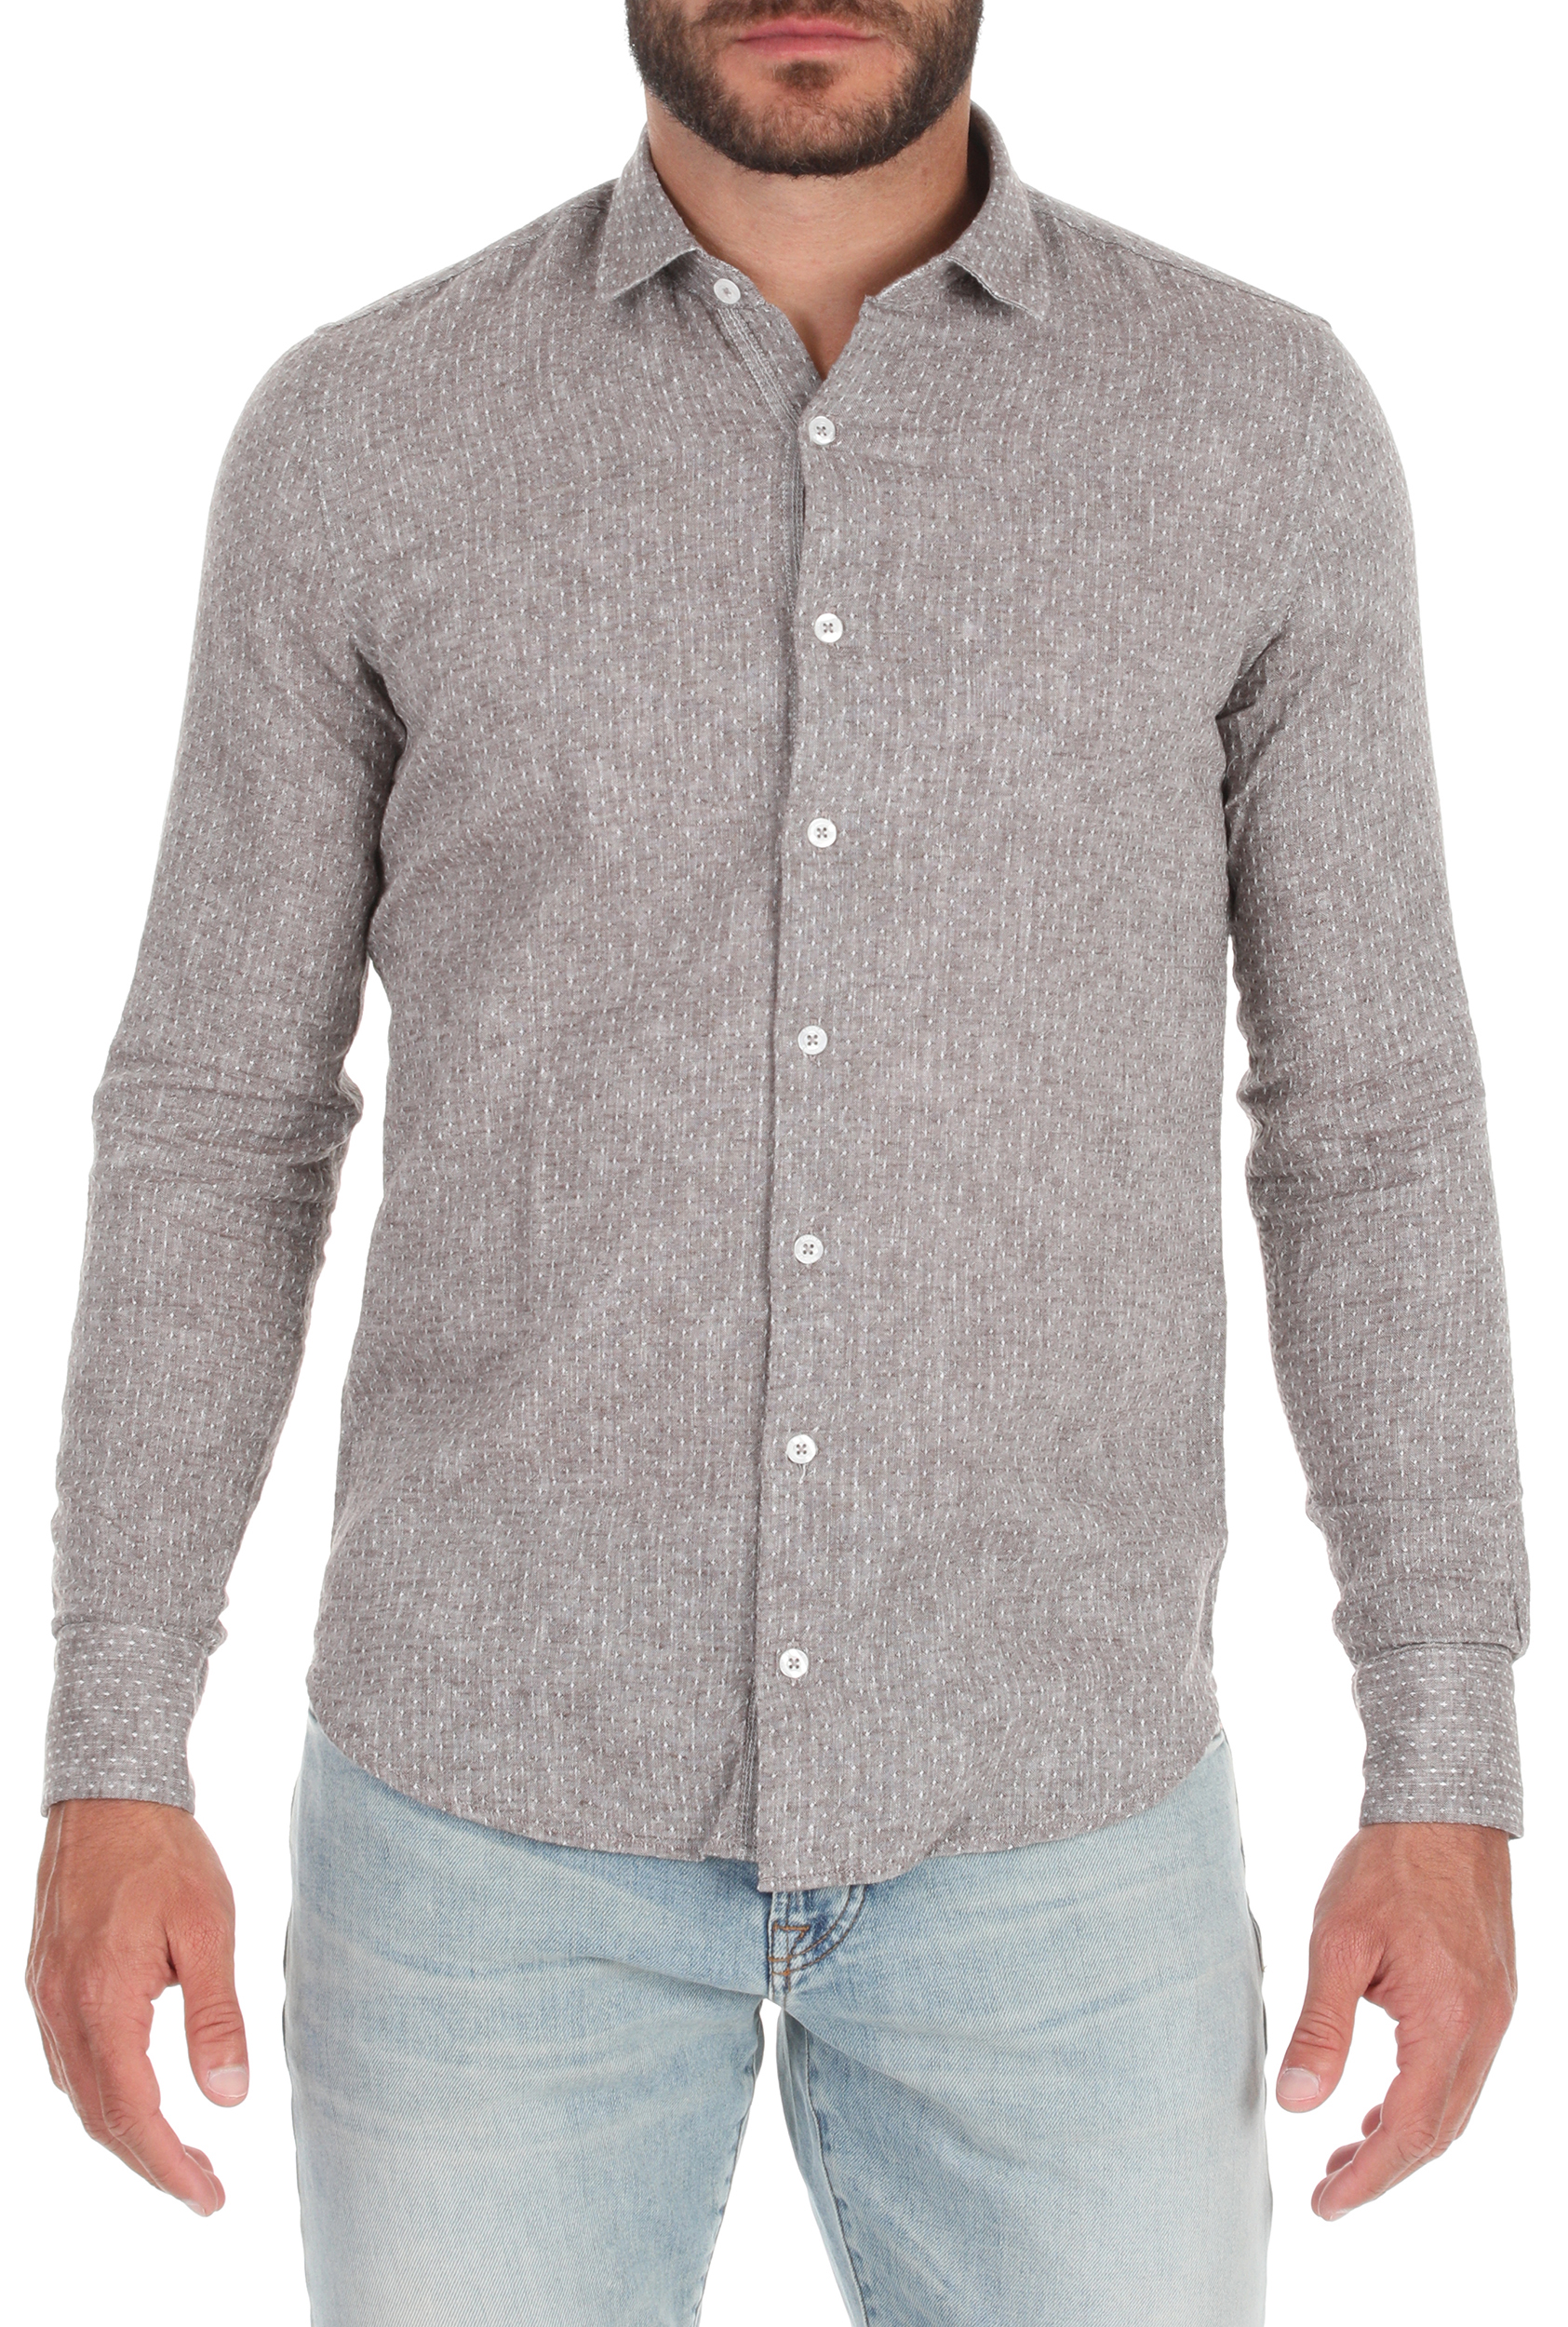 Ανδρικά/Ρούχα/Πουκάμισα/Μακρυμάνικα SSEINSE - Ανδρικό πουκάμισο SSEINSE γκρι λευκό